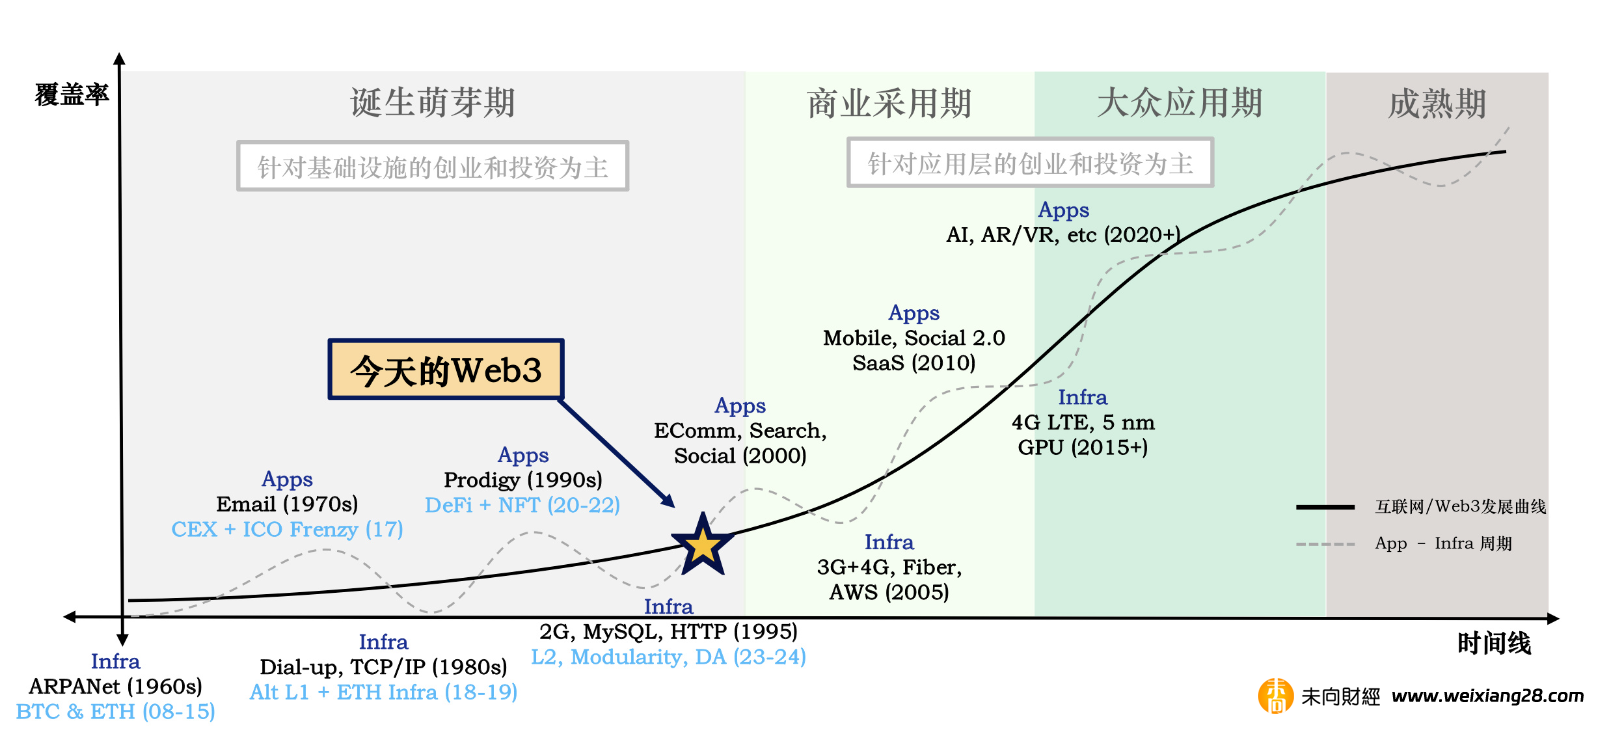 Folius Ventures：Web3 中國開發報告 (消費者應用專題)插图8